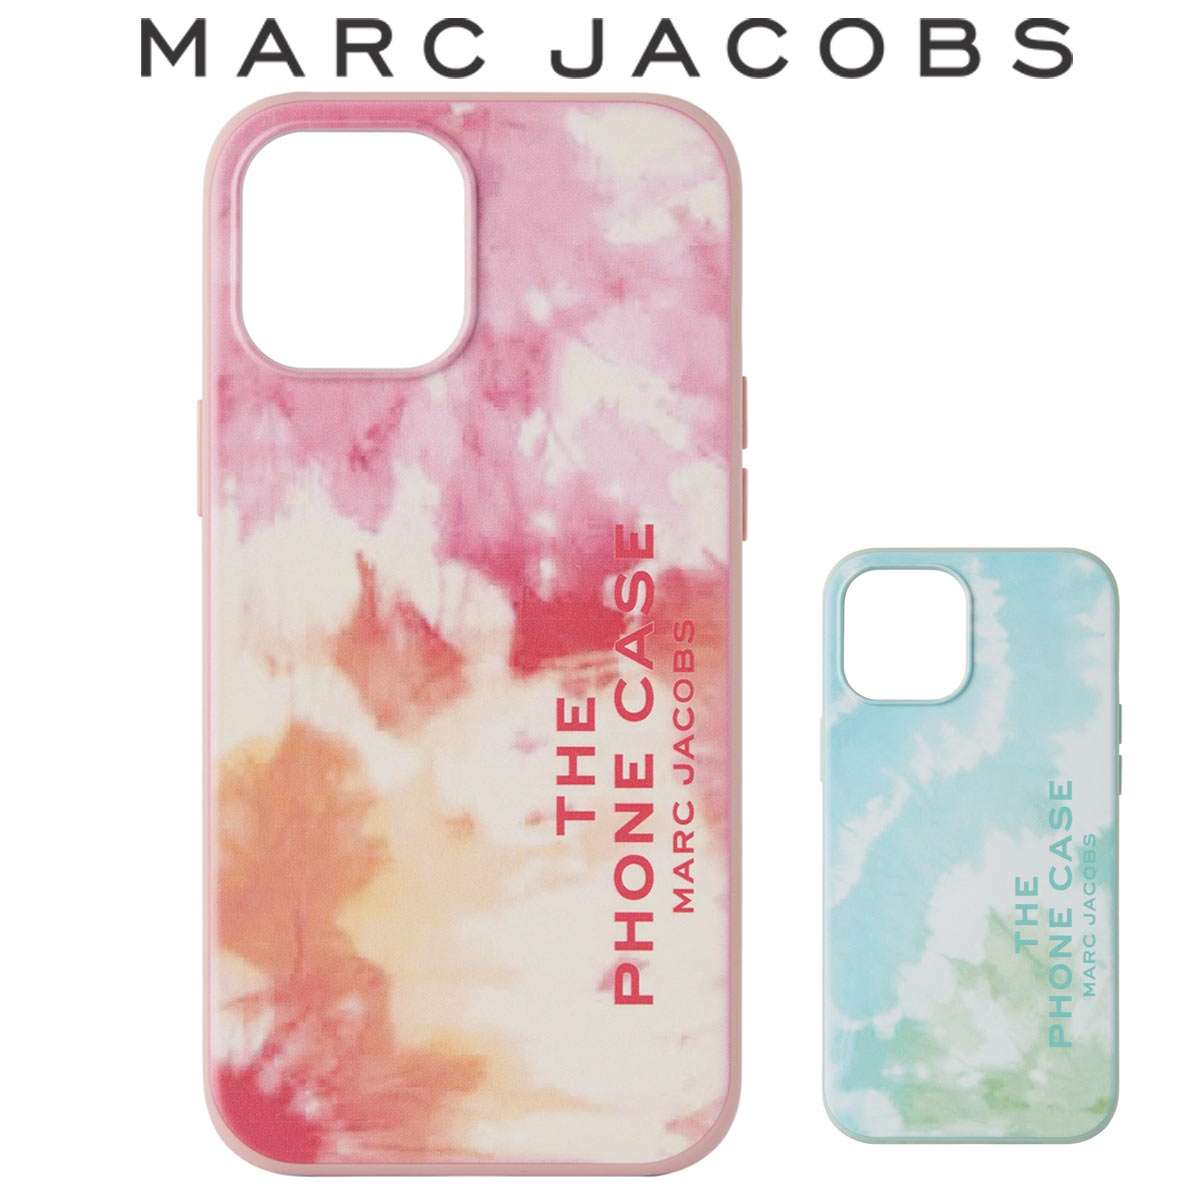 マークジェイコブス iphone12 ケース pro max アイホン 耐衝撃 かわいい オシャレ Marc Jacobs